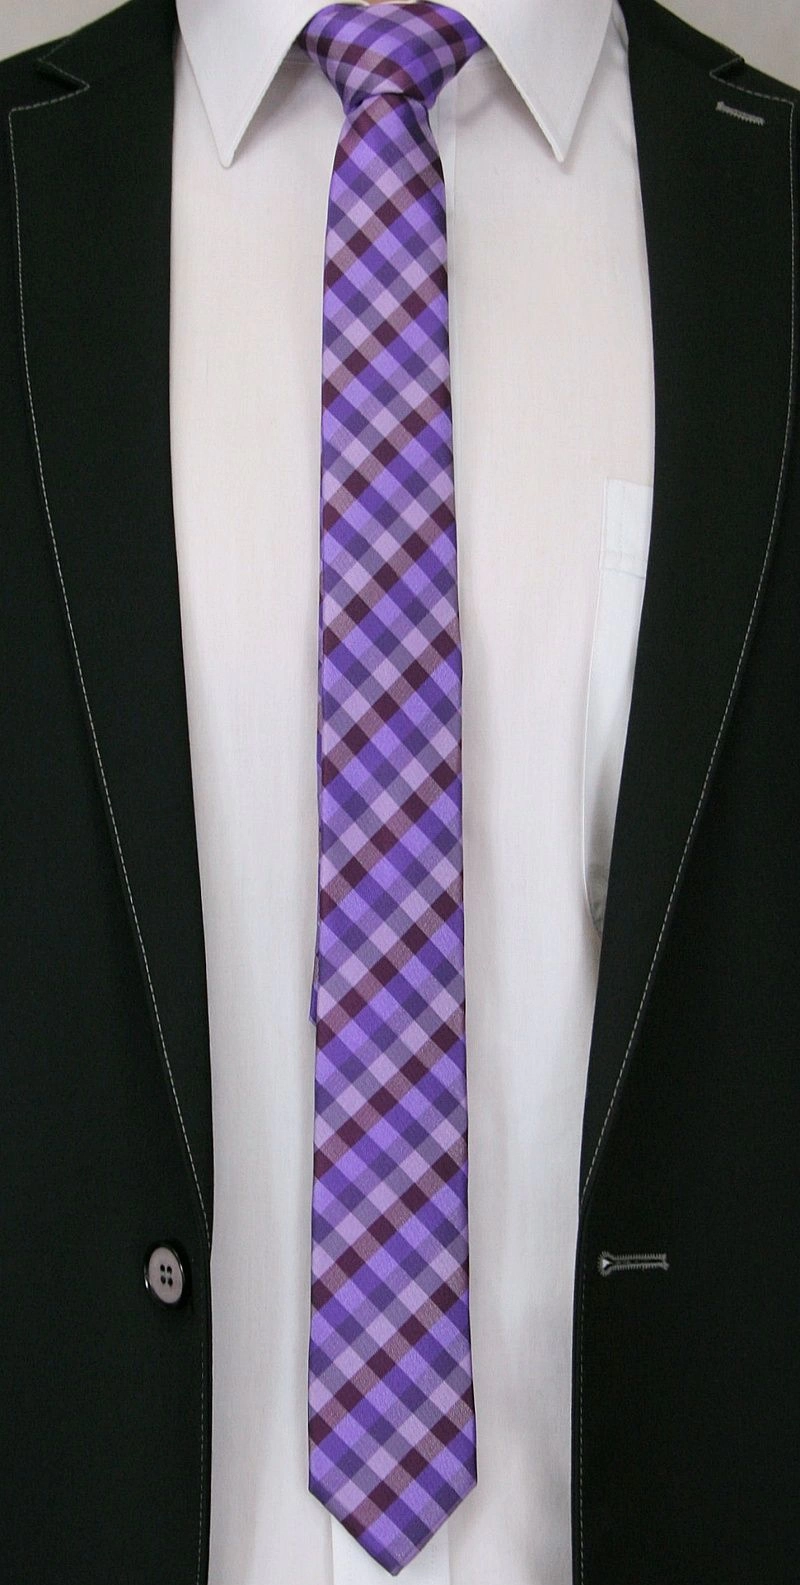 Fioletowy Stylowy Krawat (Śledź) Męski -ALTIES- 5 cm, Wąski, Wrzosowy w Drobną Kratkę